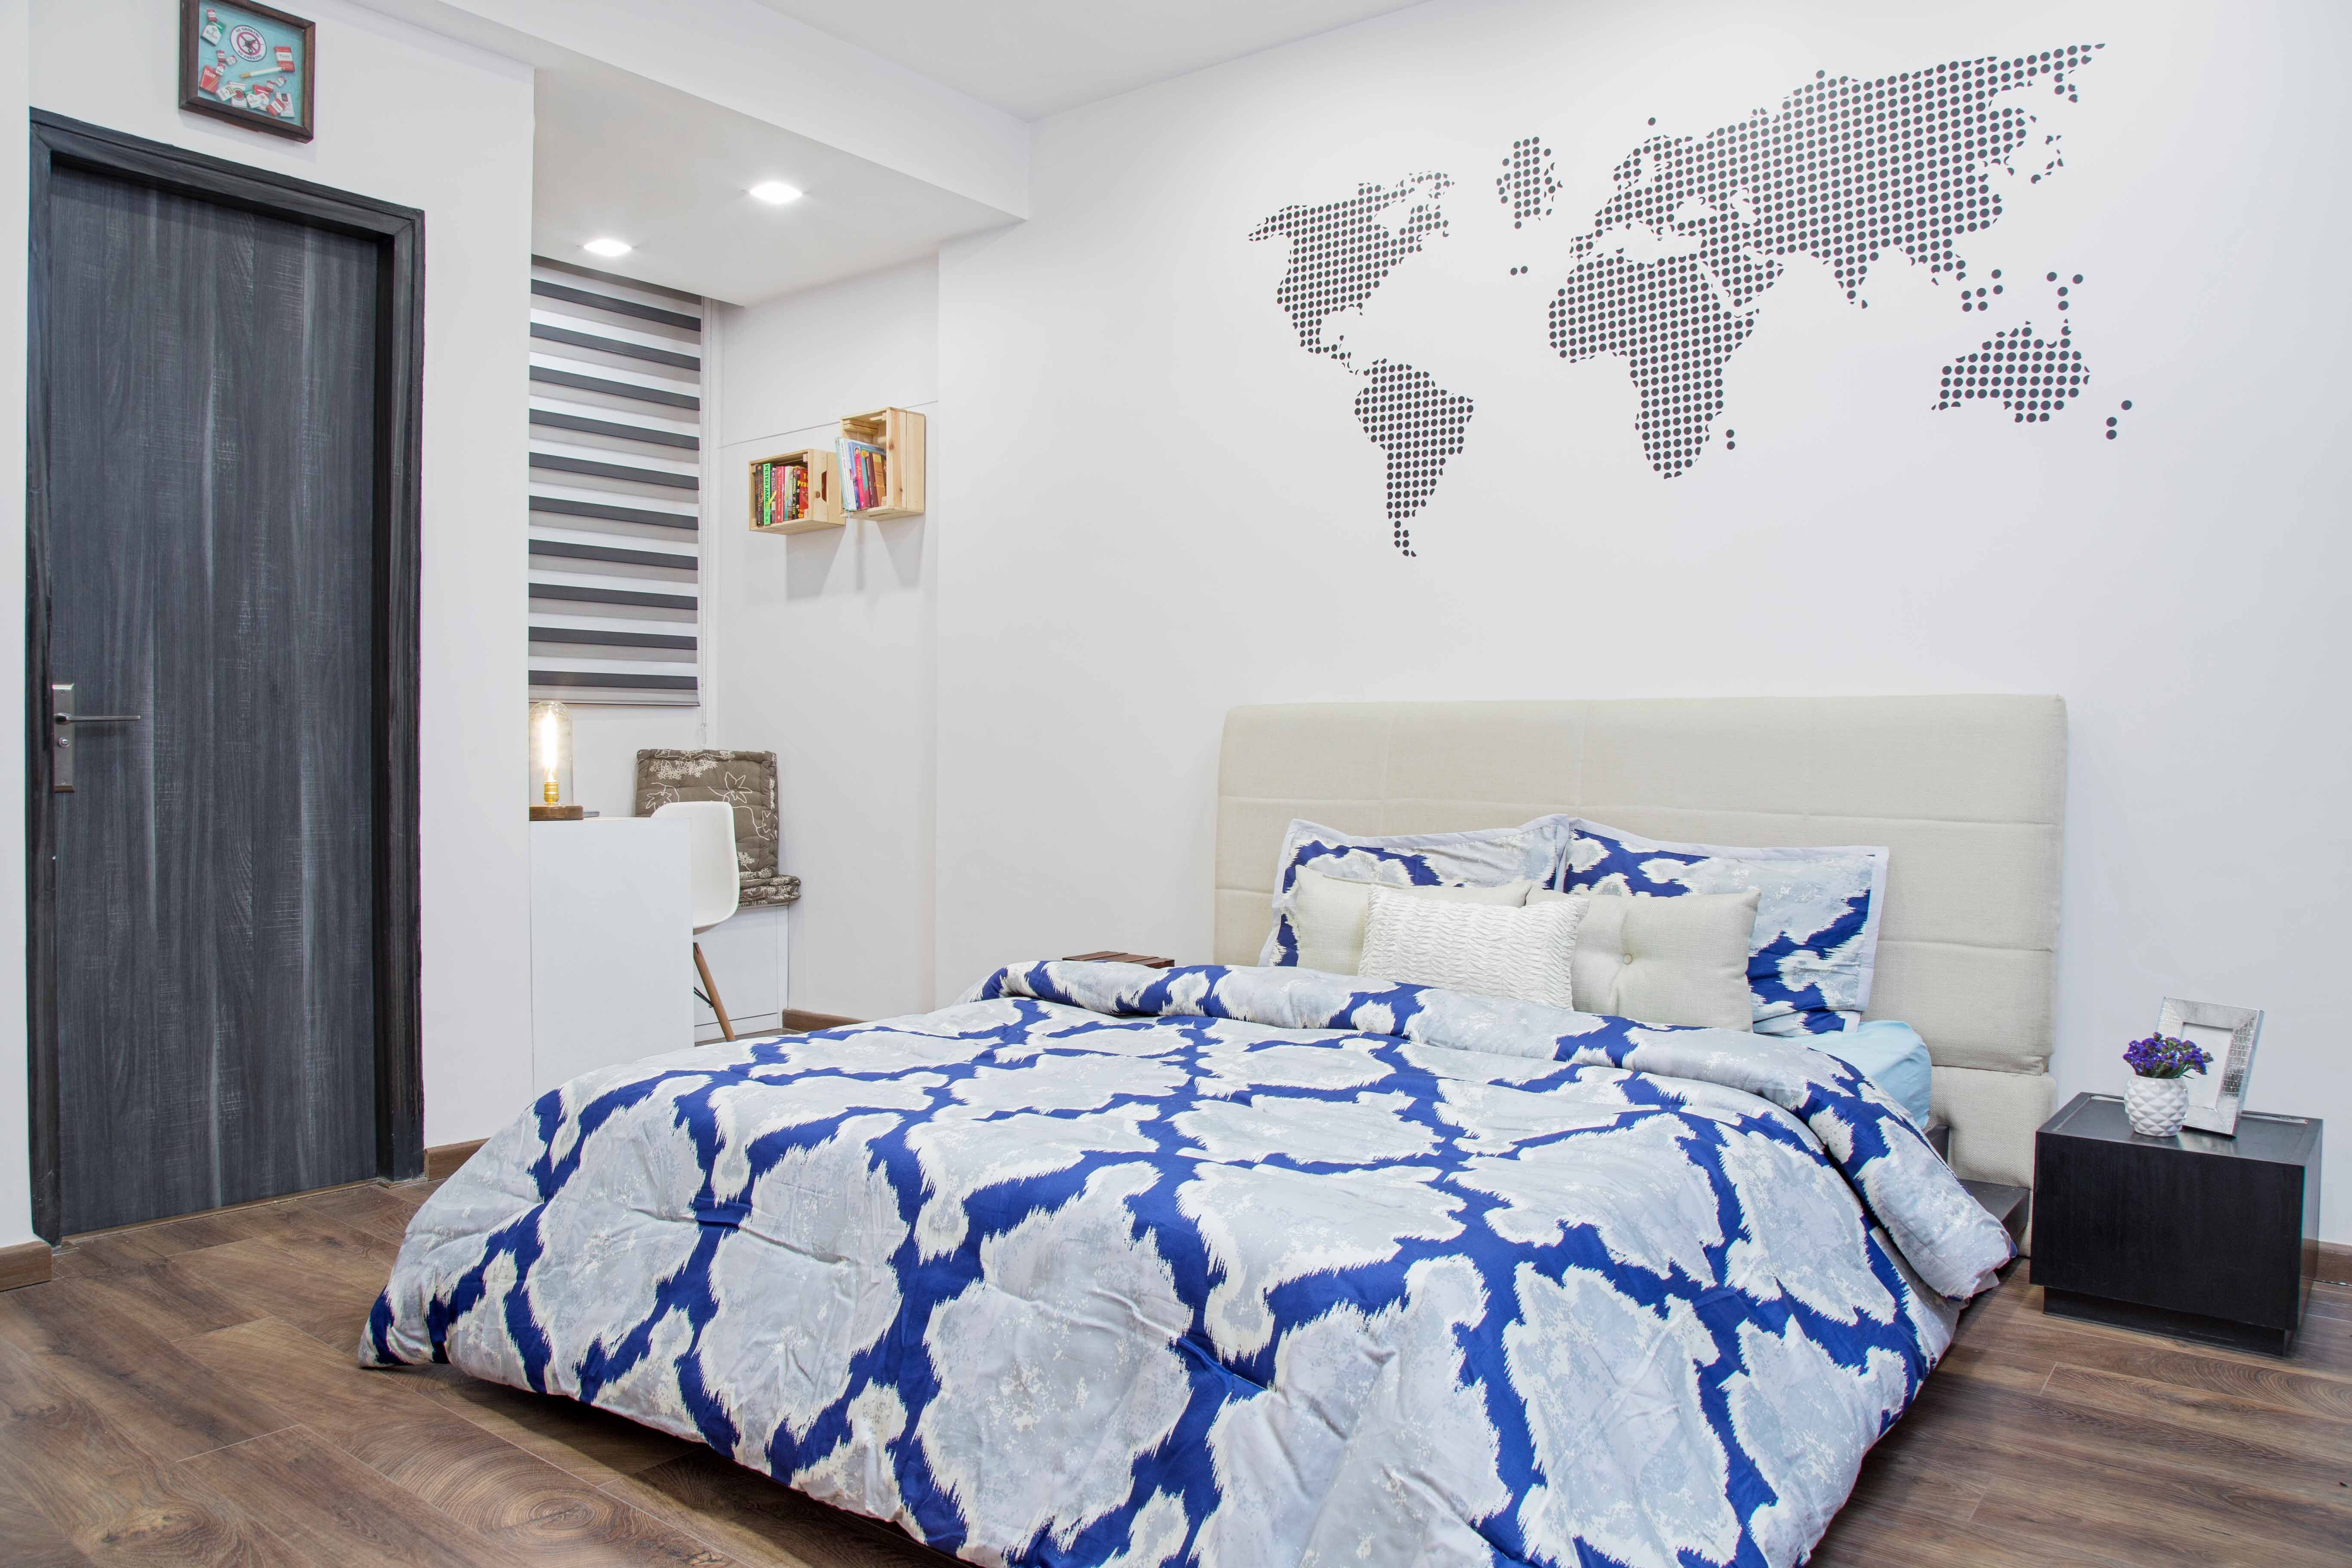 61,591 Bedroom Wallpaper Images, Stock Photos & Vectors | Shutterstock